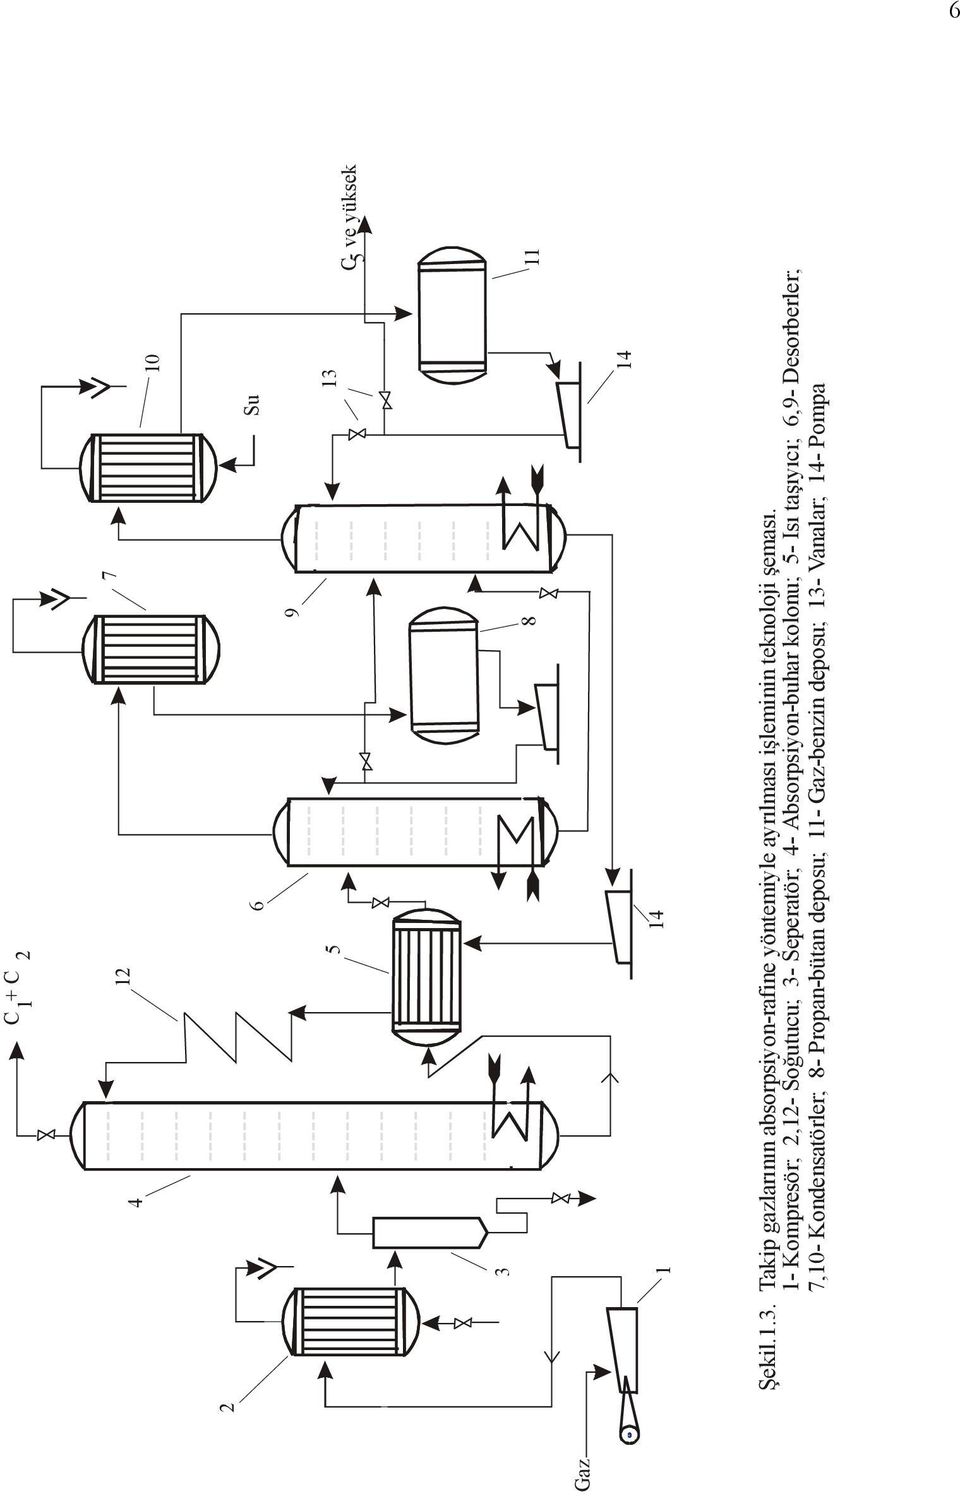 10 1 14 14 Şekil.1.3. Takip gazlarının absorpsiyon-rafine yöntemiyle ayrılması işleminin teknoloji şeması.